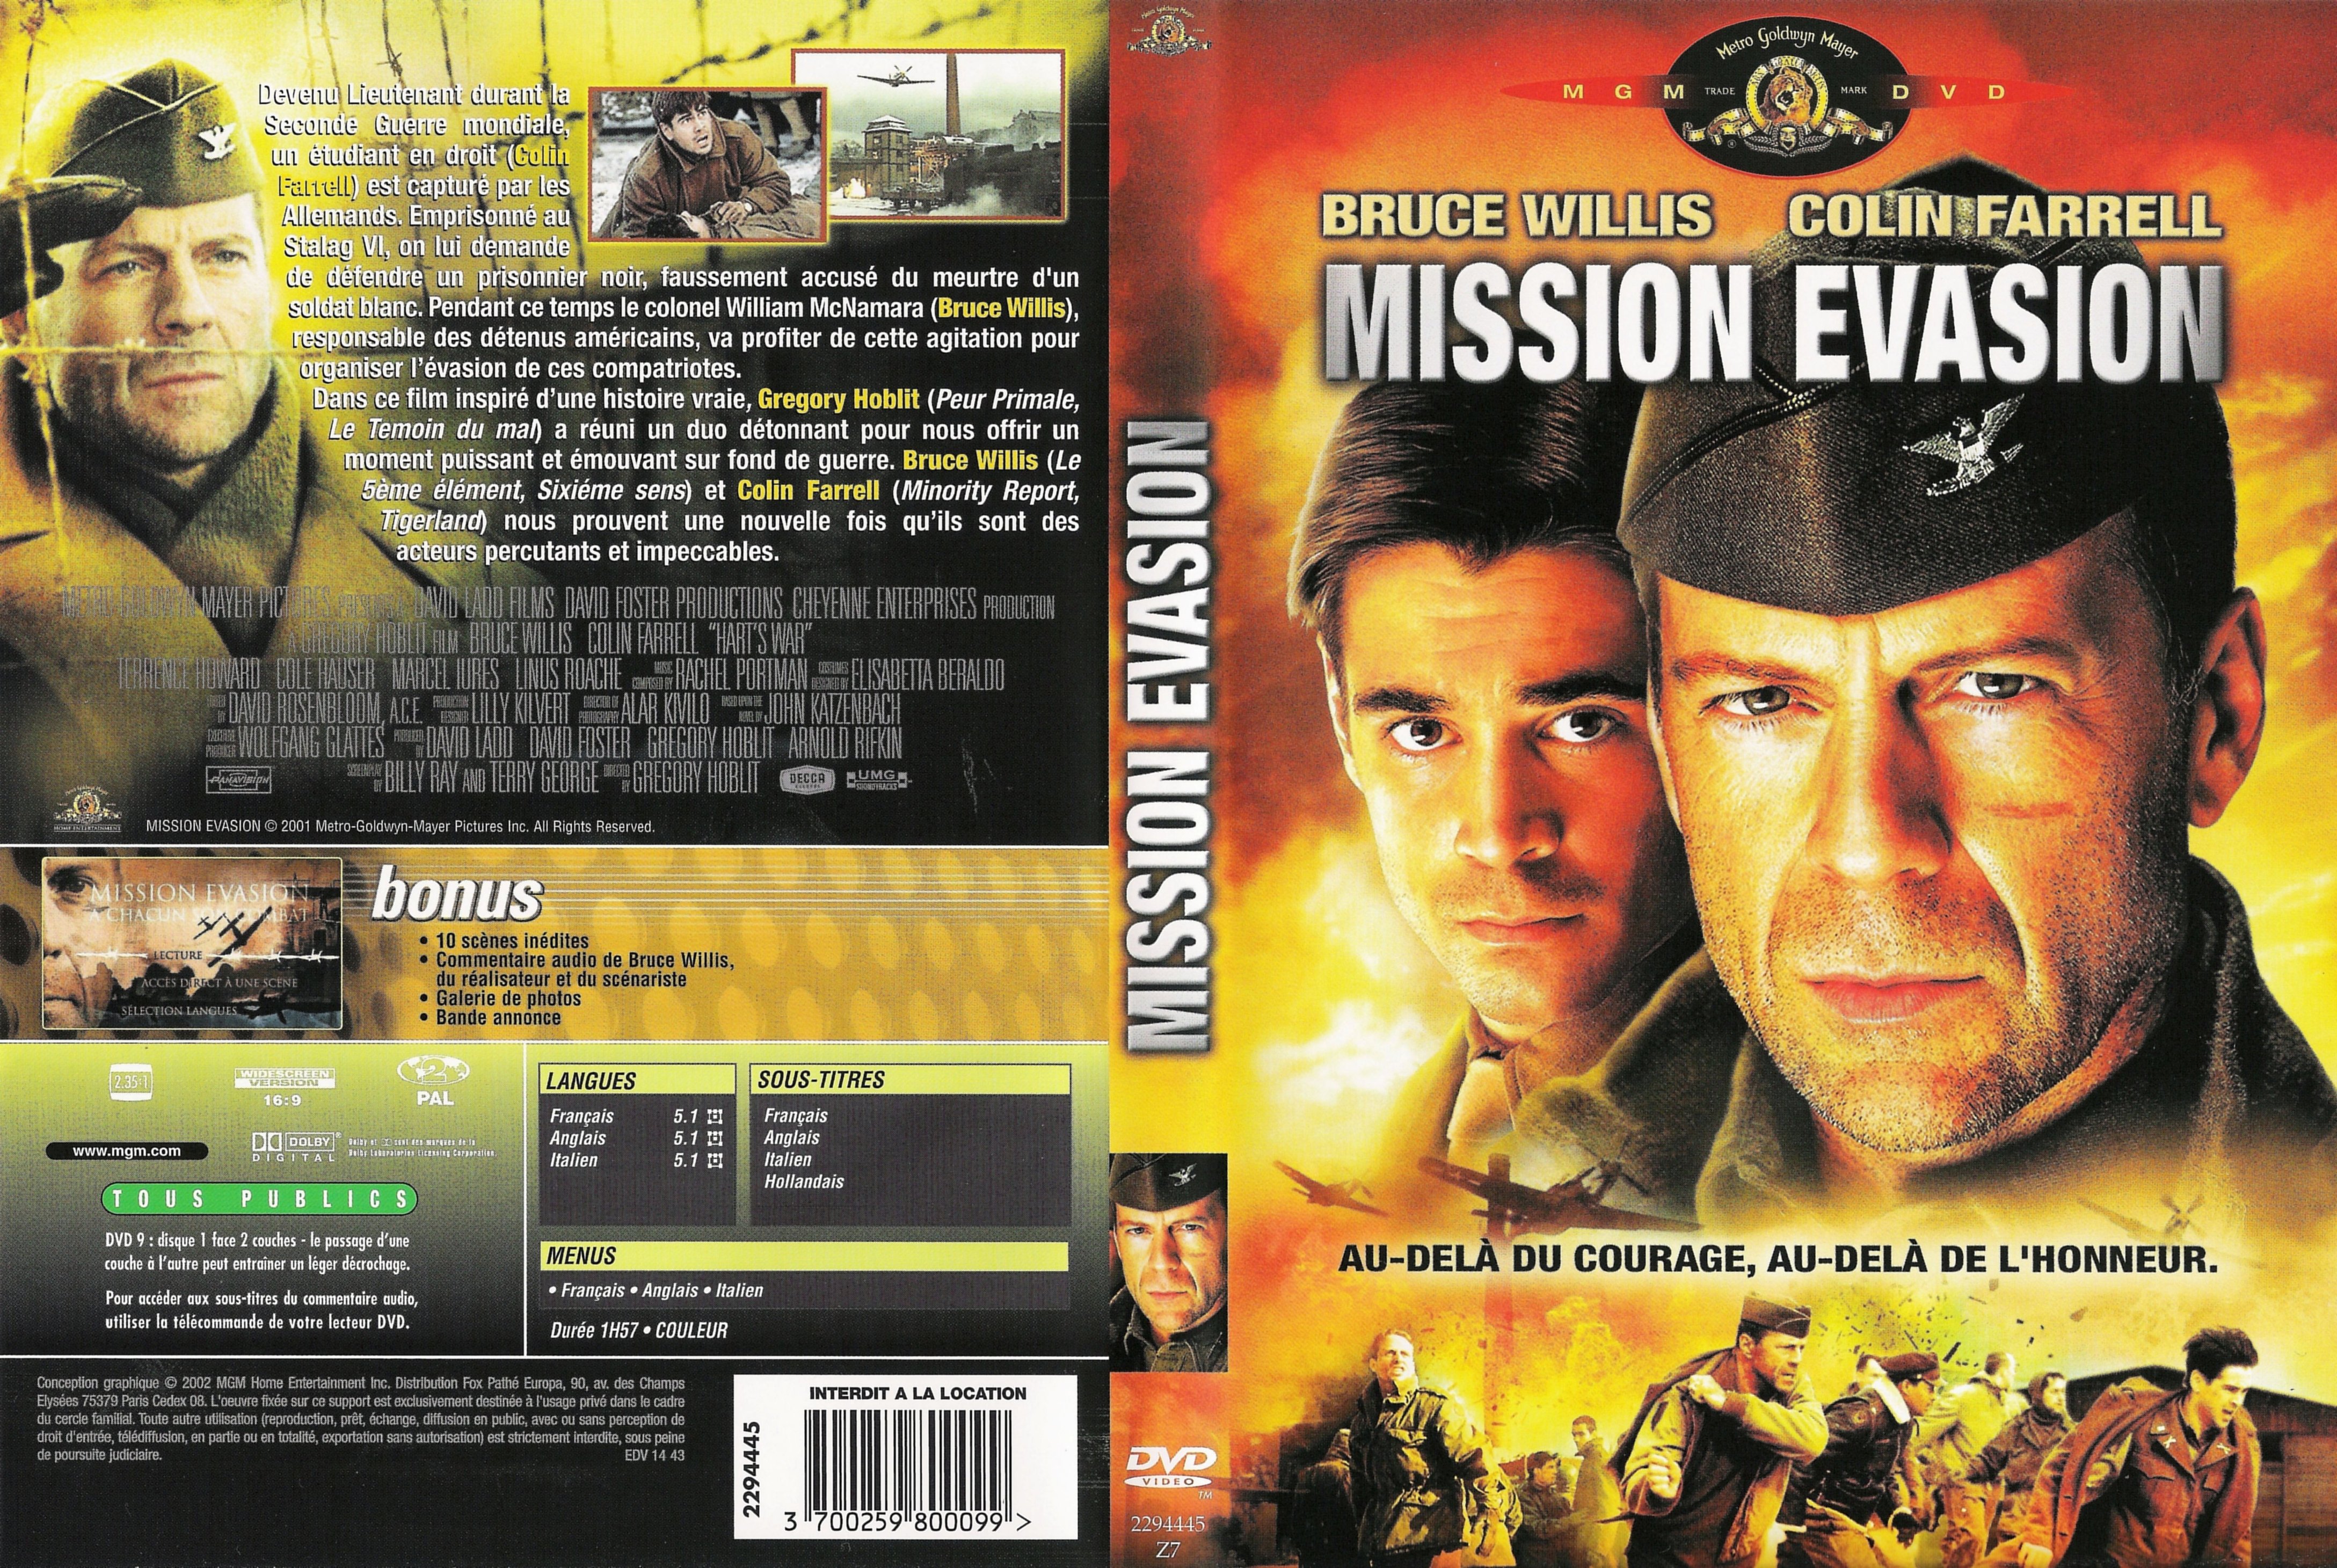 Jaquette DVD Mission vasion